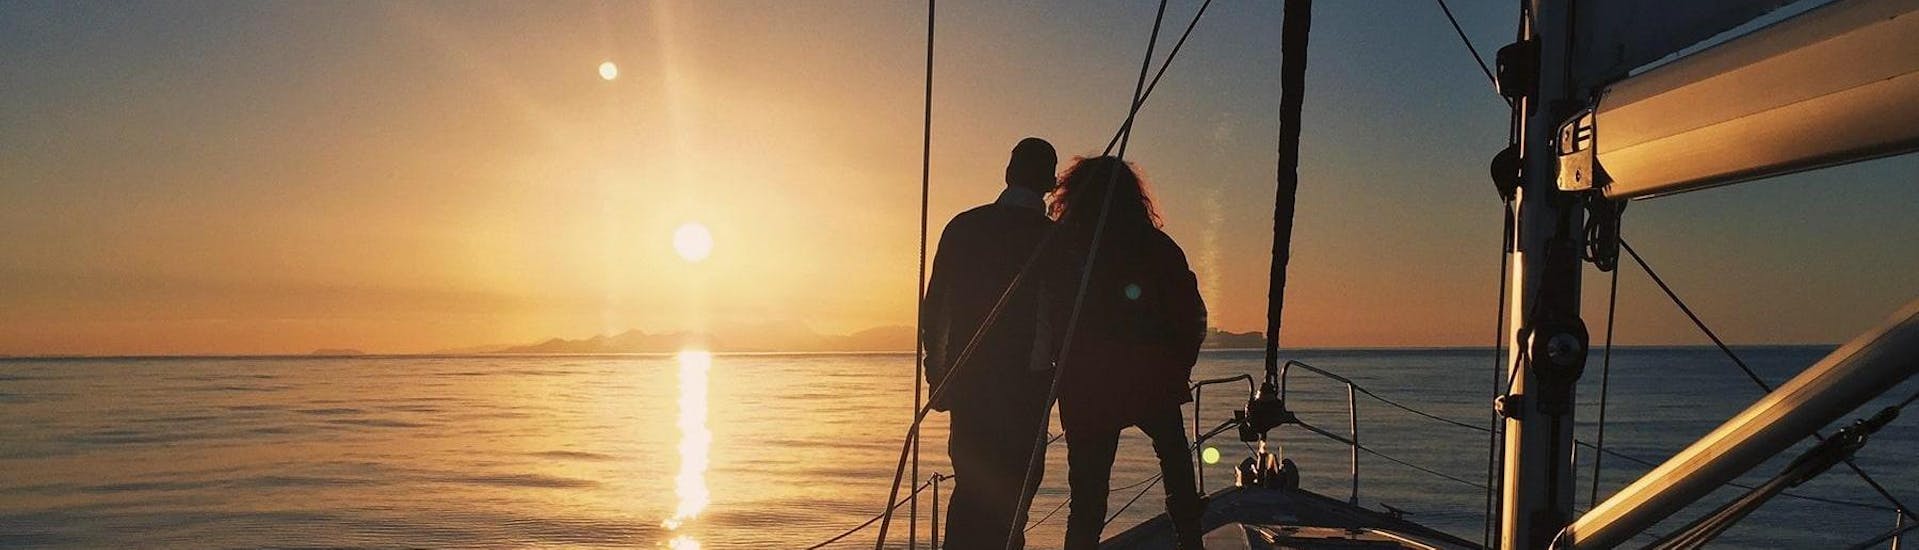 Durante el Tour Privado en Barco de Vela Atardecer con Cena Romántica organizado por Five Star Barcelona, una pareja está disfrutando de los momentos únicos en mar abierto cuando el sol desaparece detrás del horizonte. 